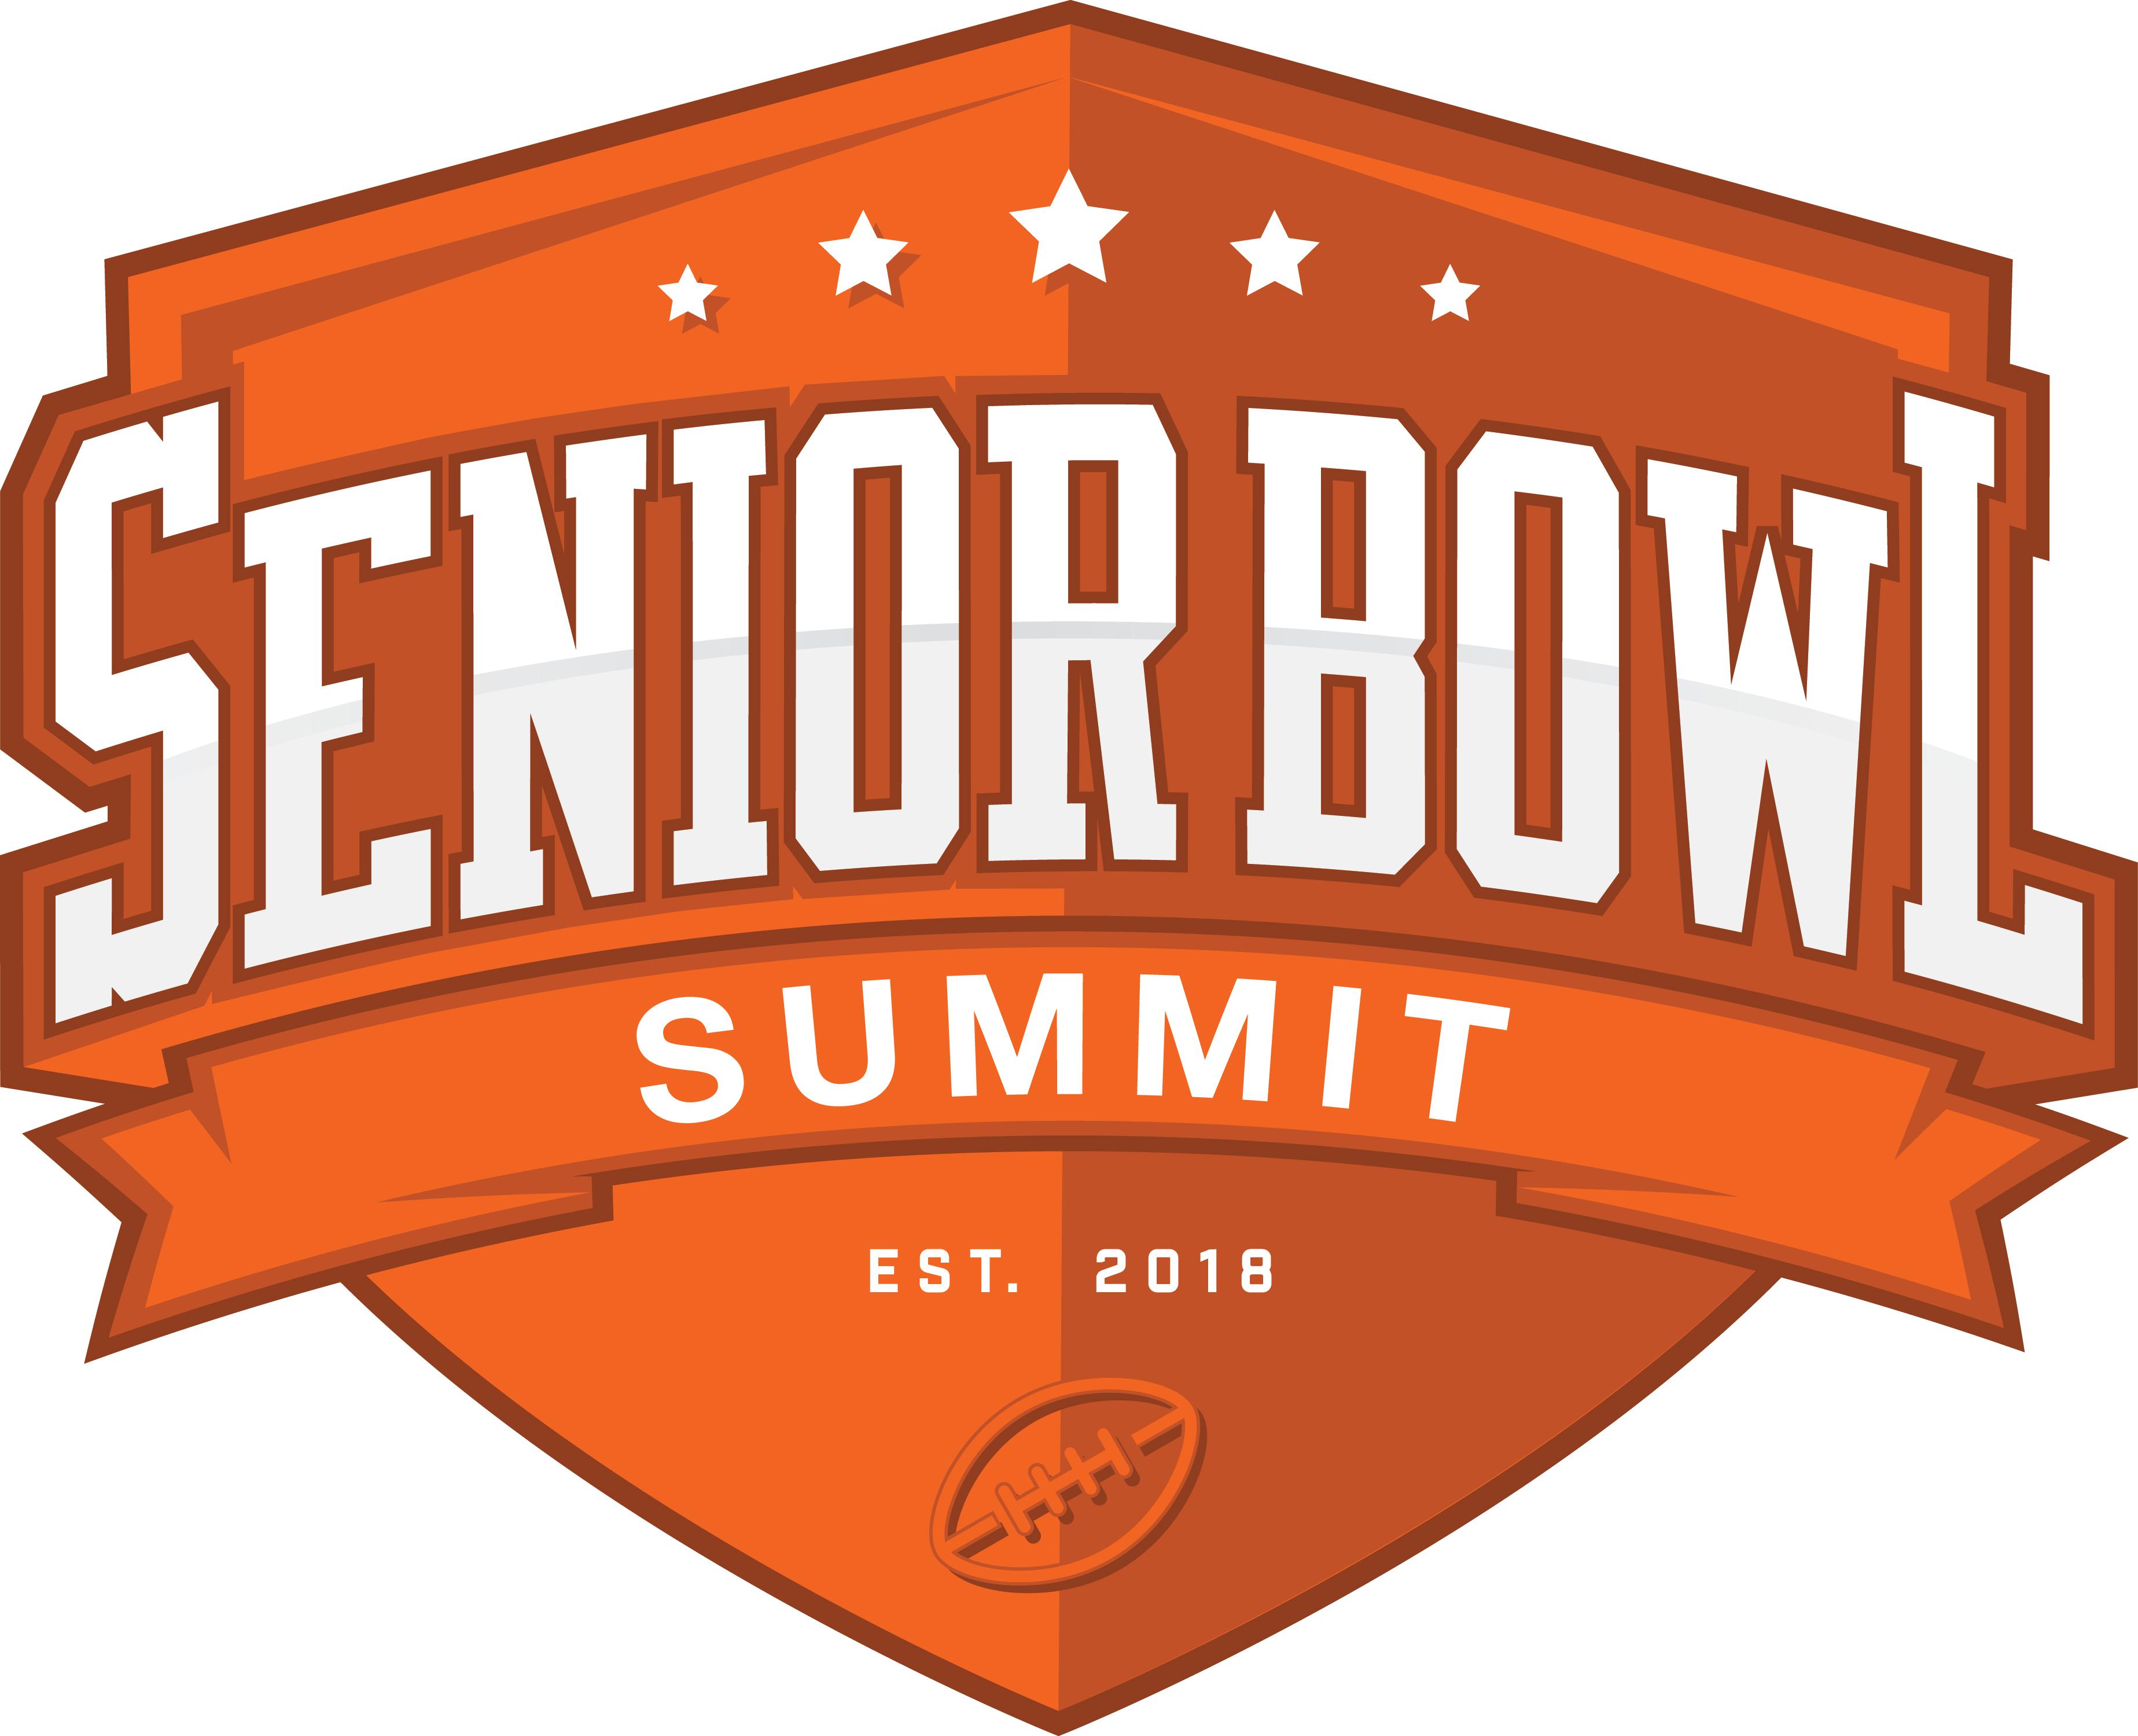 Senior Bowl Summit Downtown Mobile Alliance